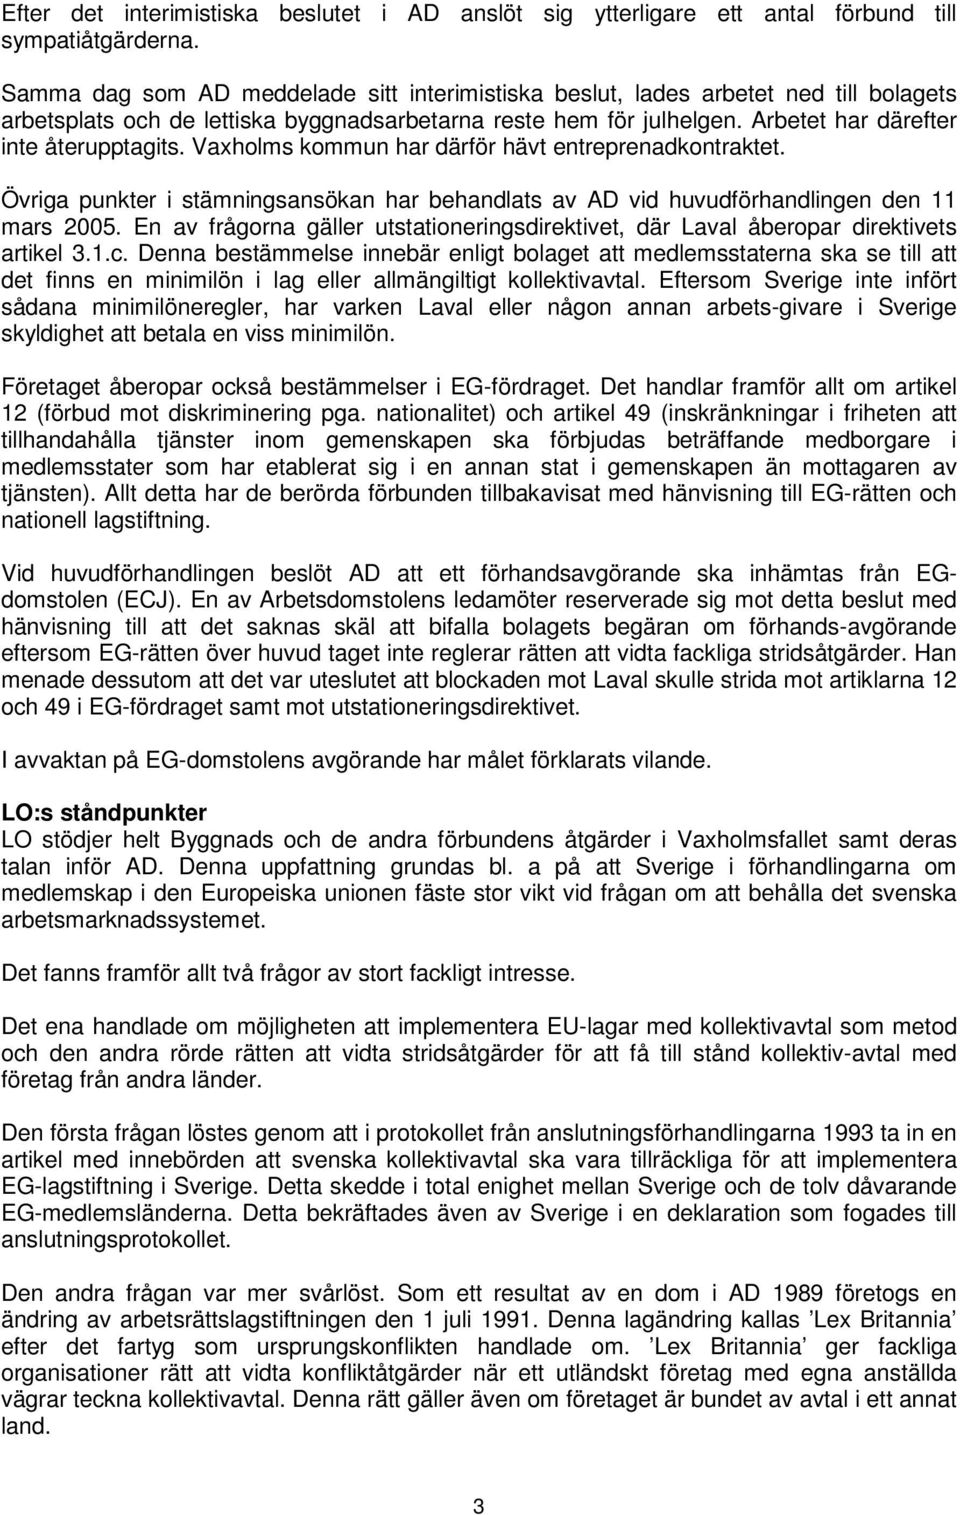 Vaxholms kommun har därför hävt entreprenadkontraktet. Övriga punkter i stämningsansökan har behandlats av AD vid huvudförhandlingen den 11 mars 2005.